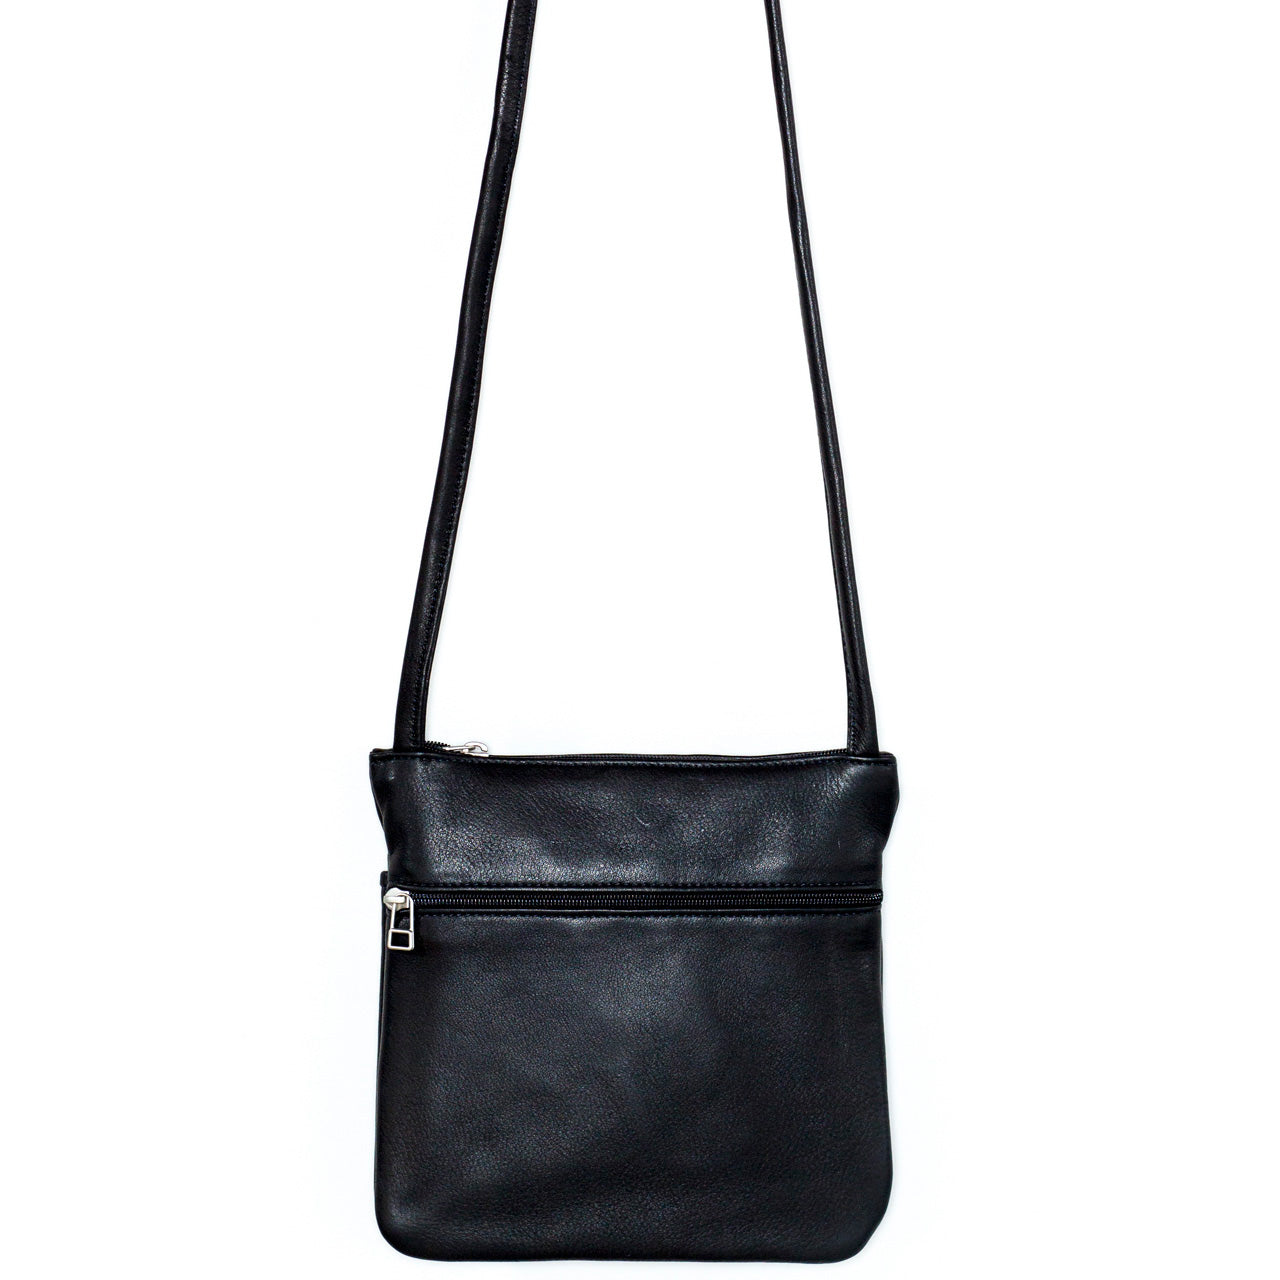 SVEN Style No. 071 Crossbody/Shoulder Bag black leather